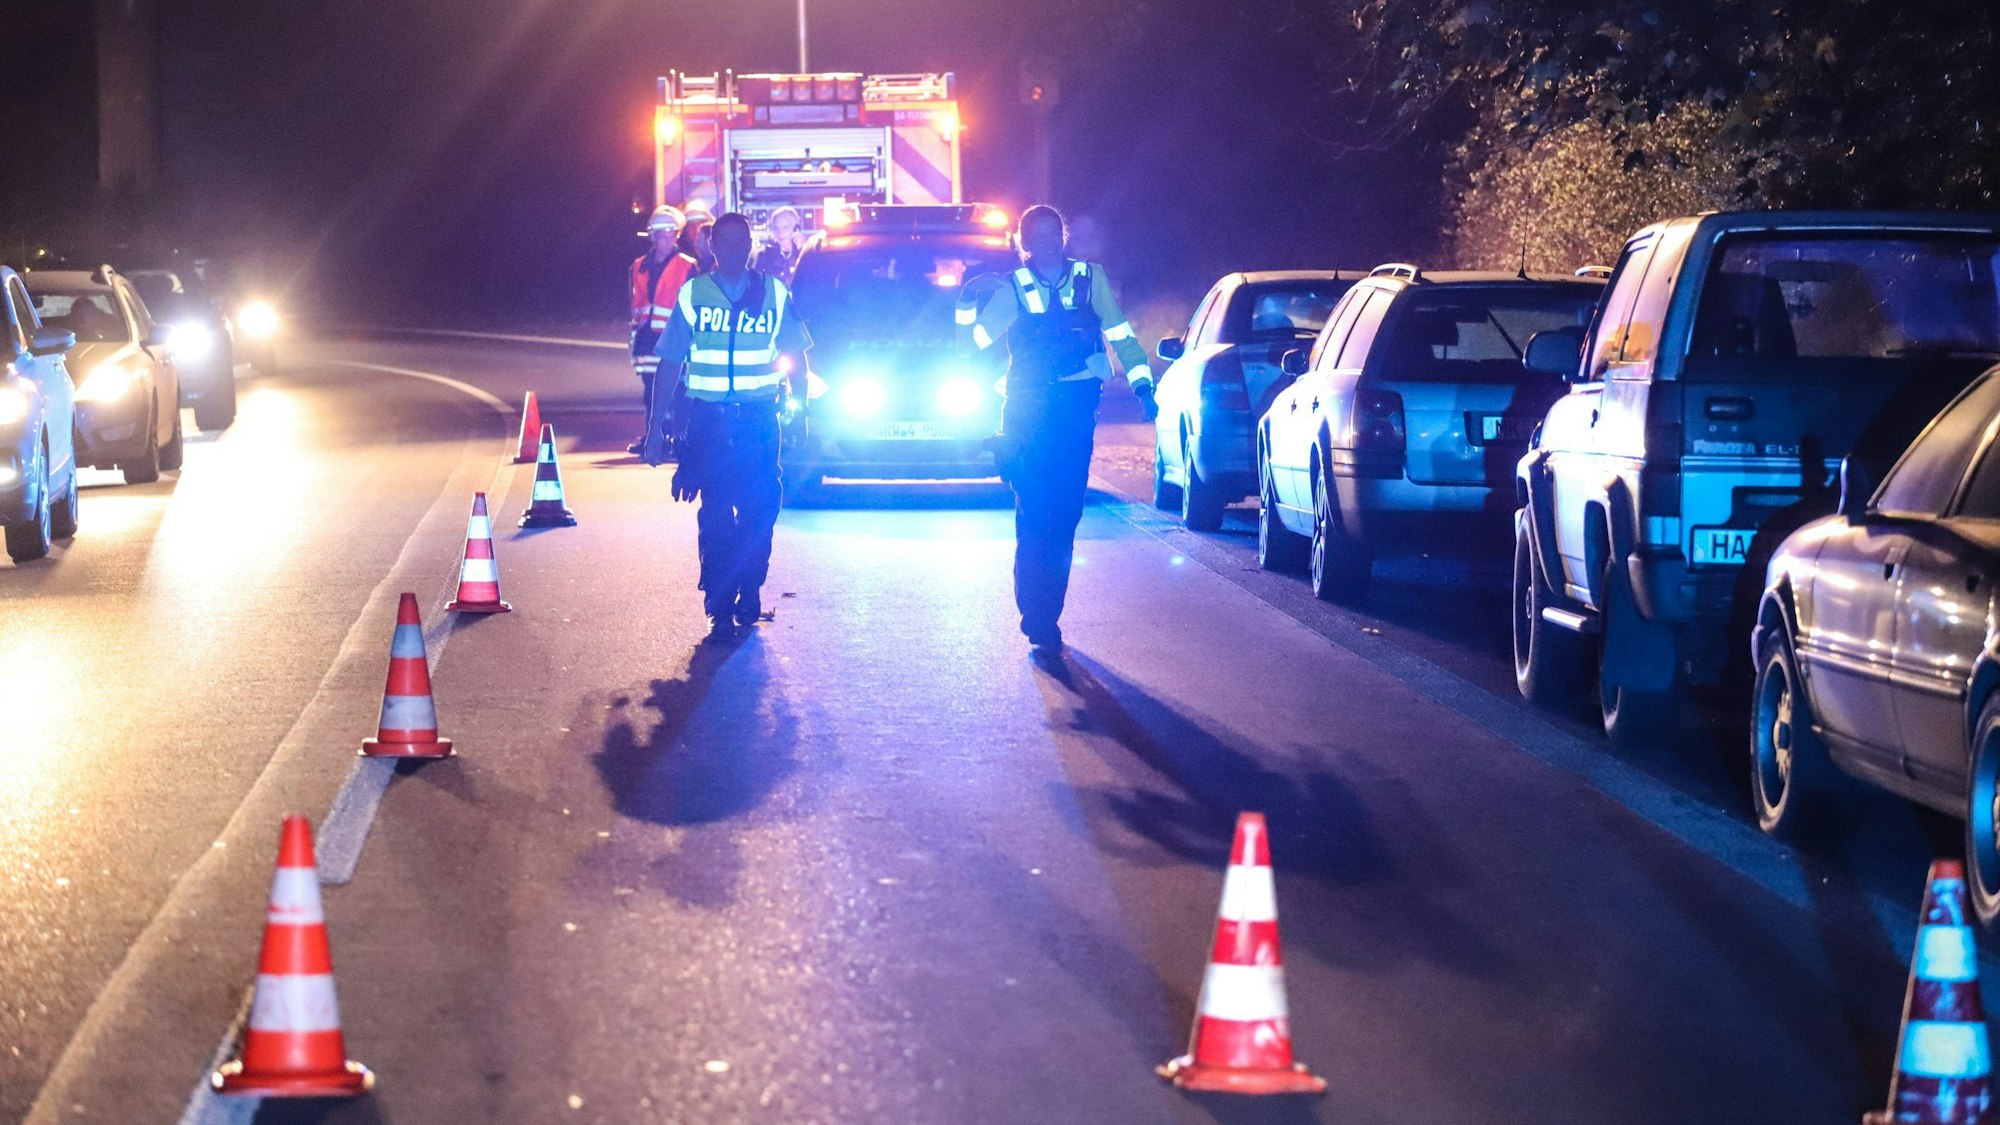 26.10.2022, Hagen: Polizei und Feuerwehr sind an einem Tatort im Einsatz. Bei der Flucht vor der Polizei ist ein Autofahrer in Hagen direkt auf eine Polizistin zugefahren.